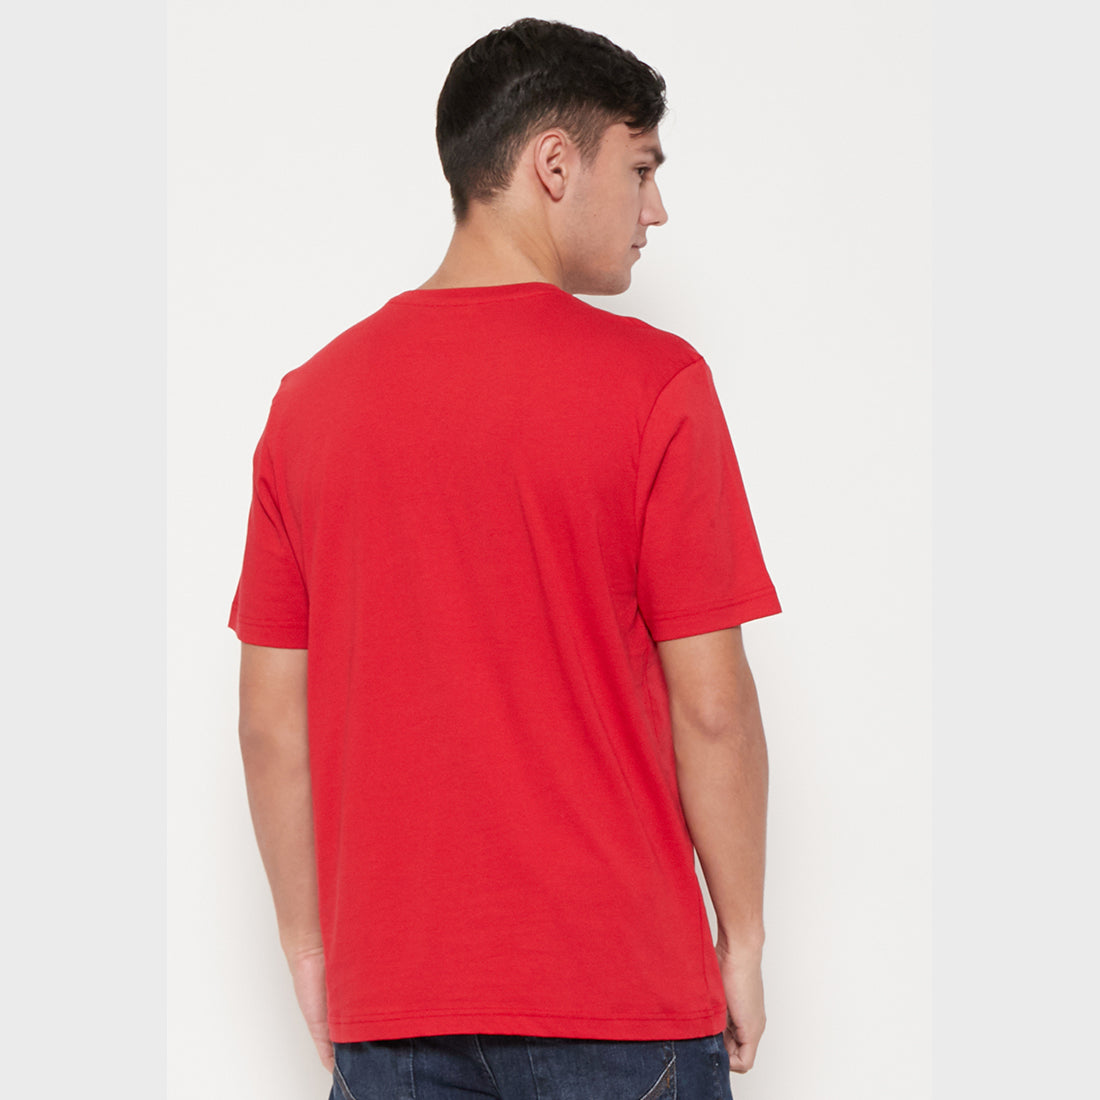 Carvil Tshirt Pria WEB-RED